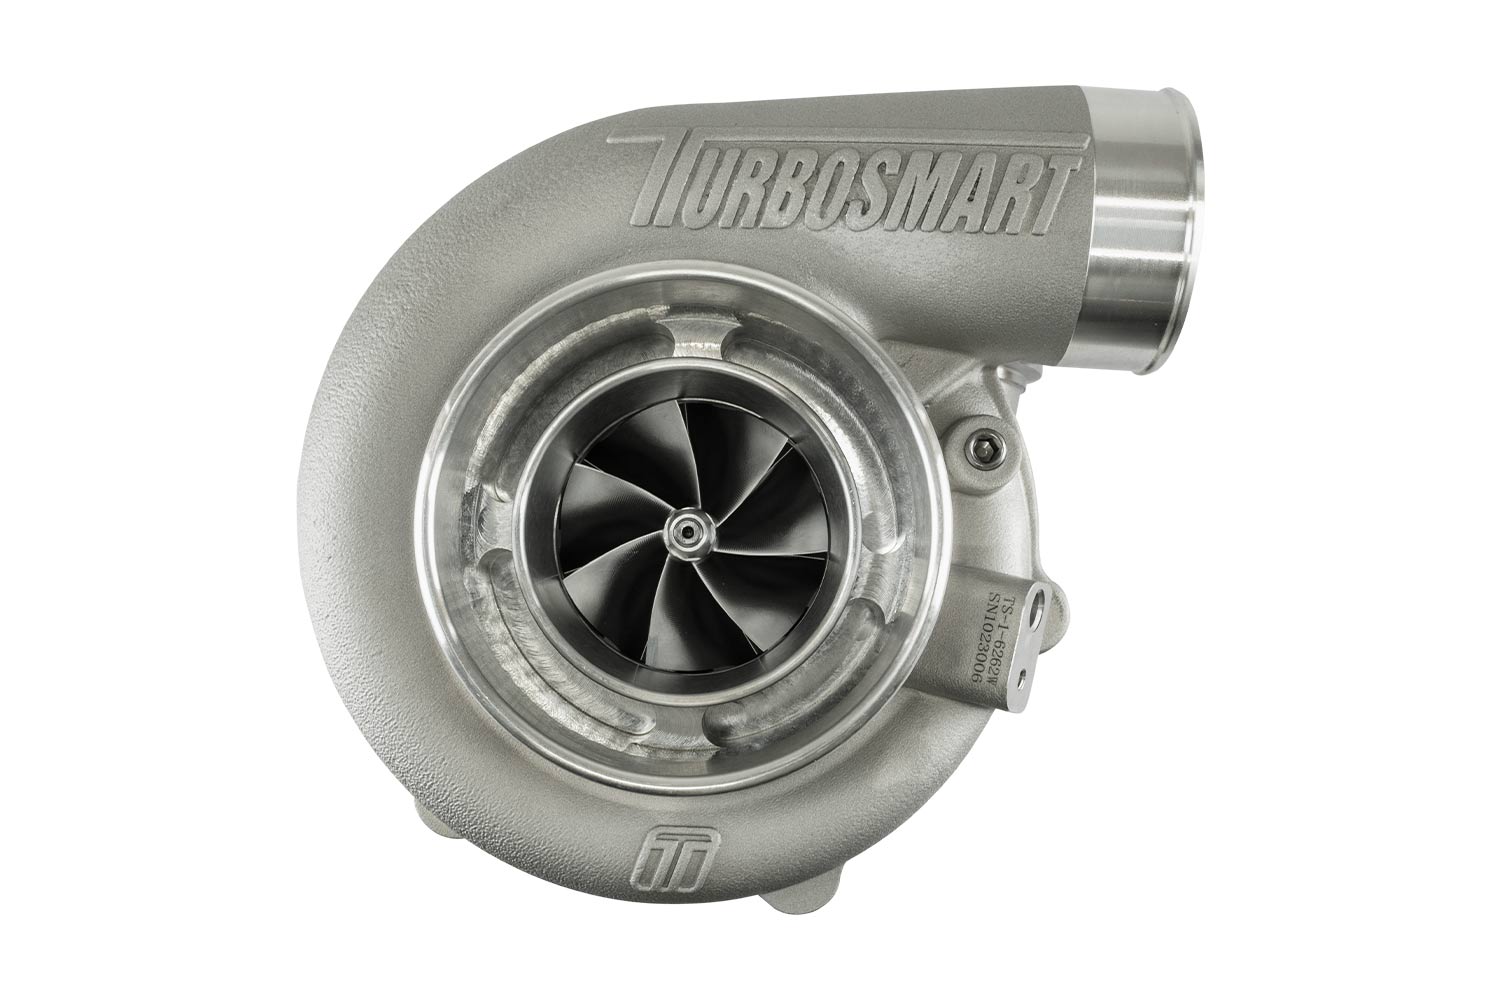 Turbosmart TURBO Water Cooled 7170 V-Band Inlet, V-Band Outlet, A/R 0.96 External Wastegate